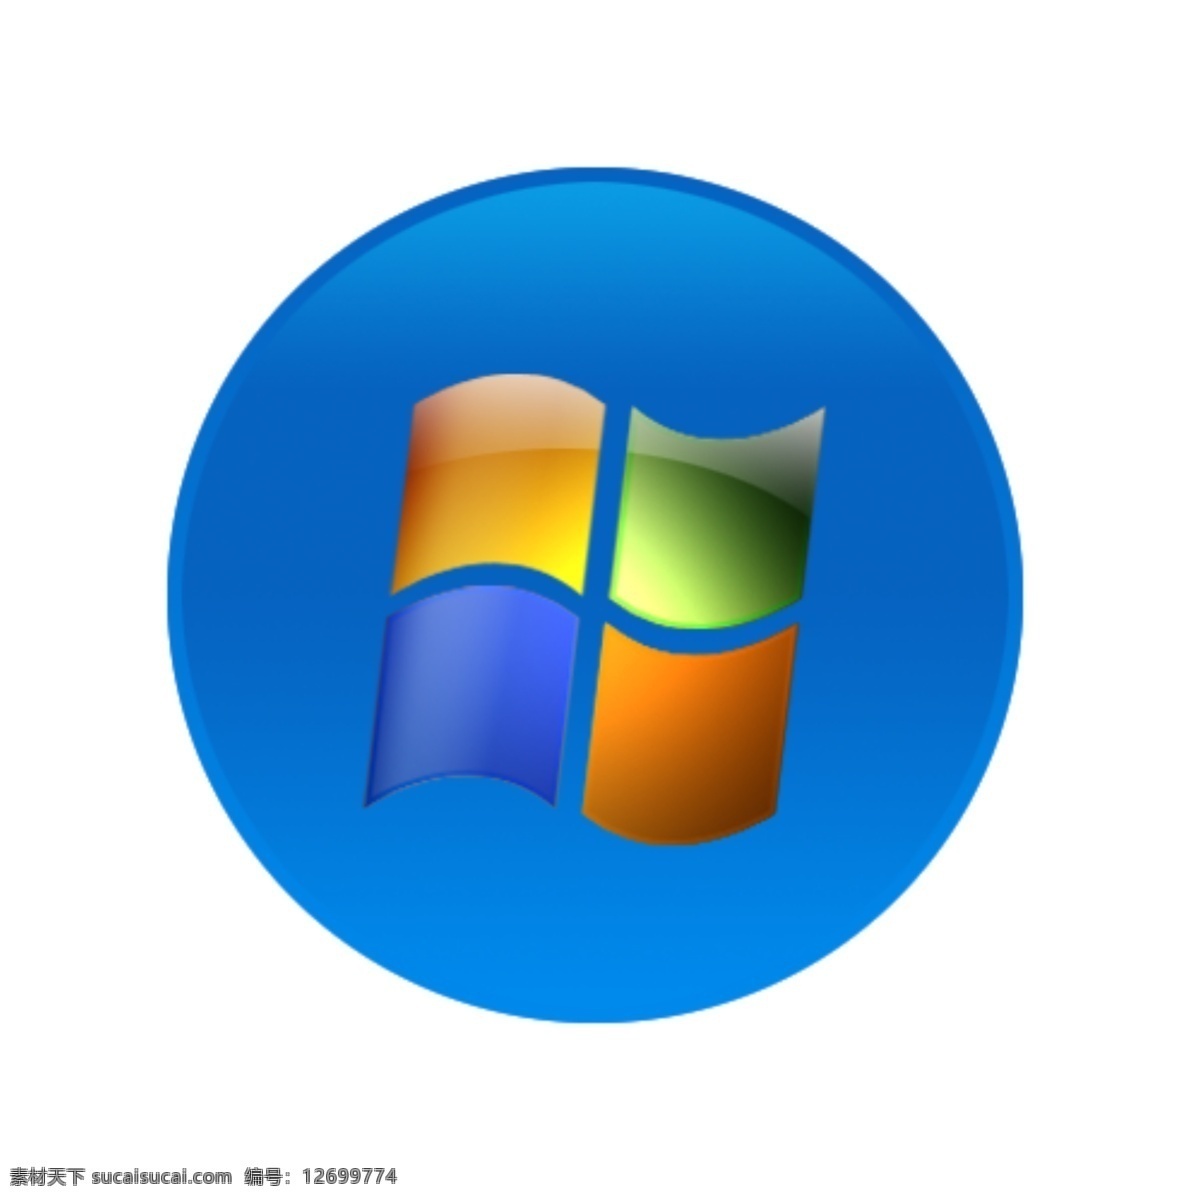 windows 图标 windows7 psd源文件